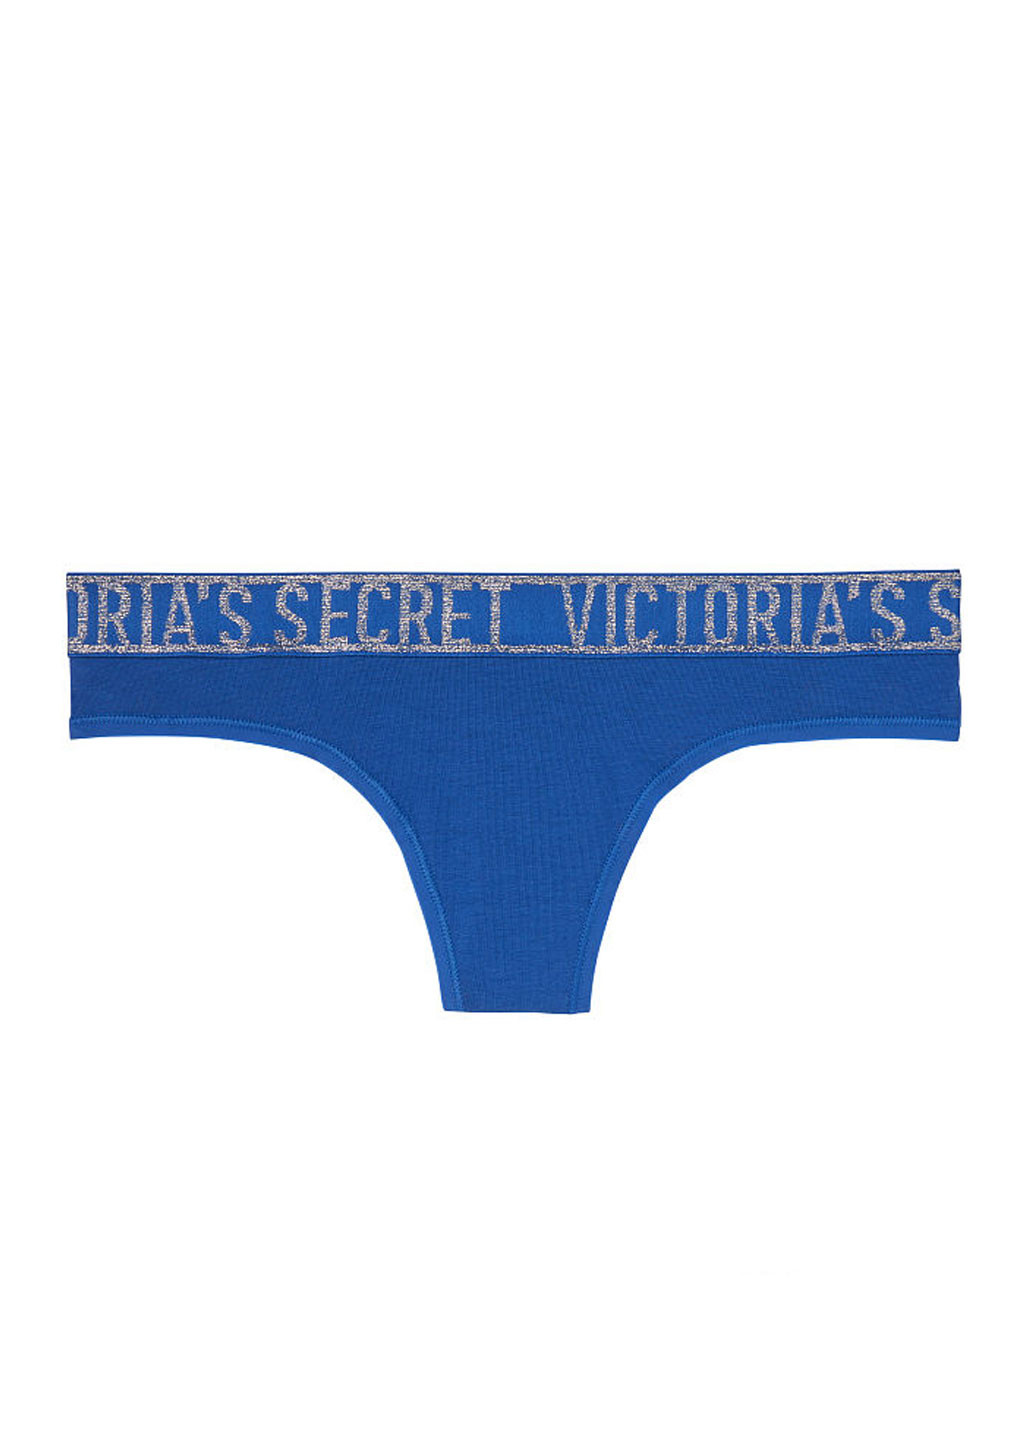 Трусики Victoria's Secret стрінги написи сині повсякденні